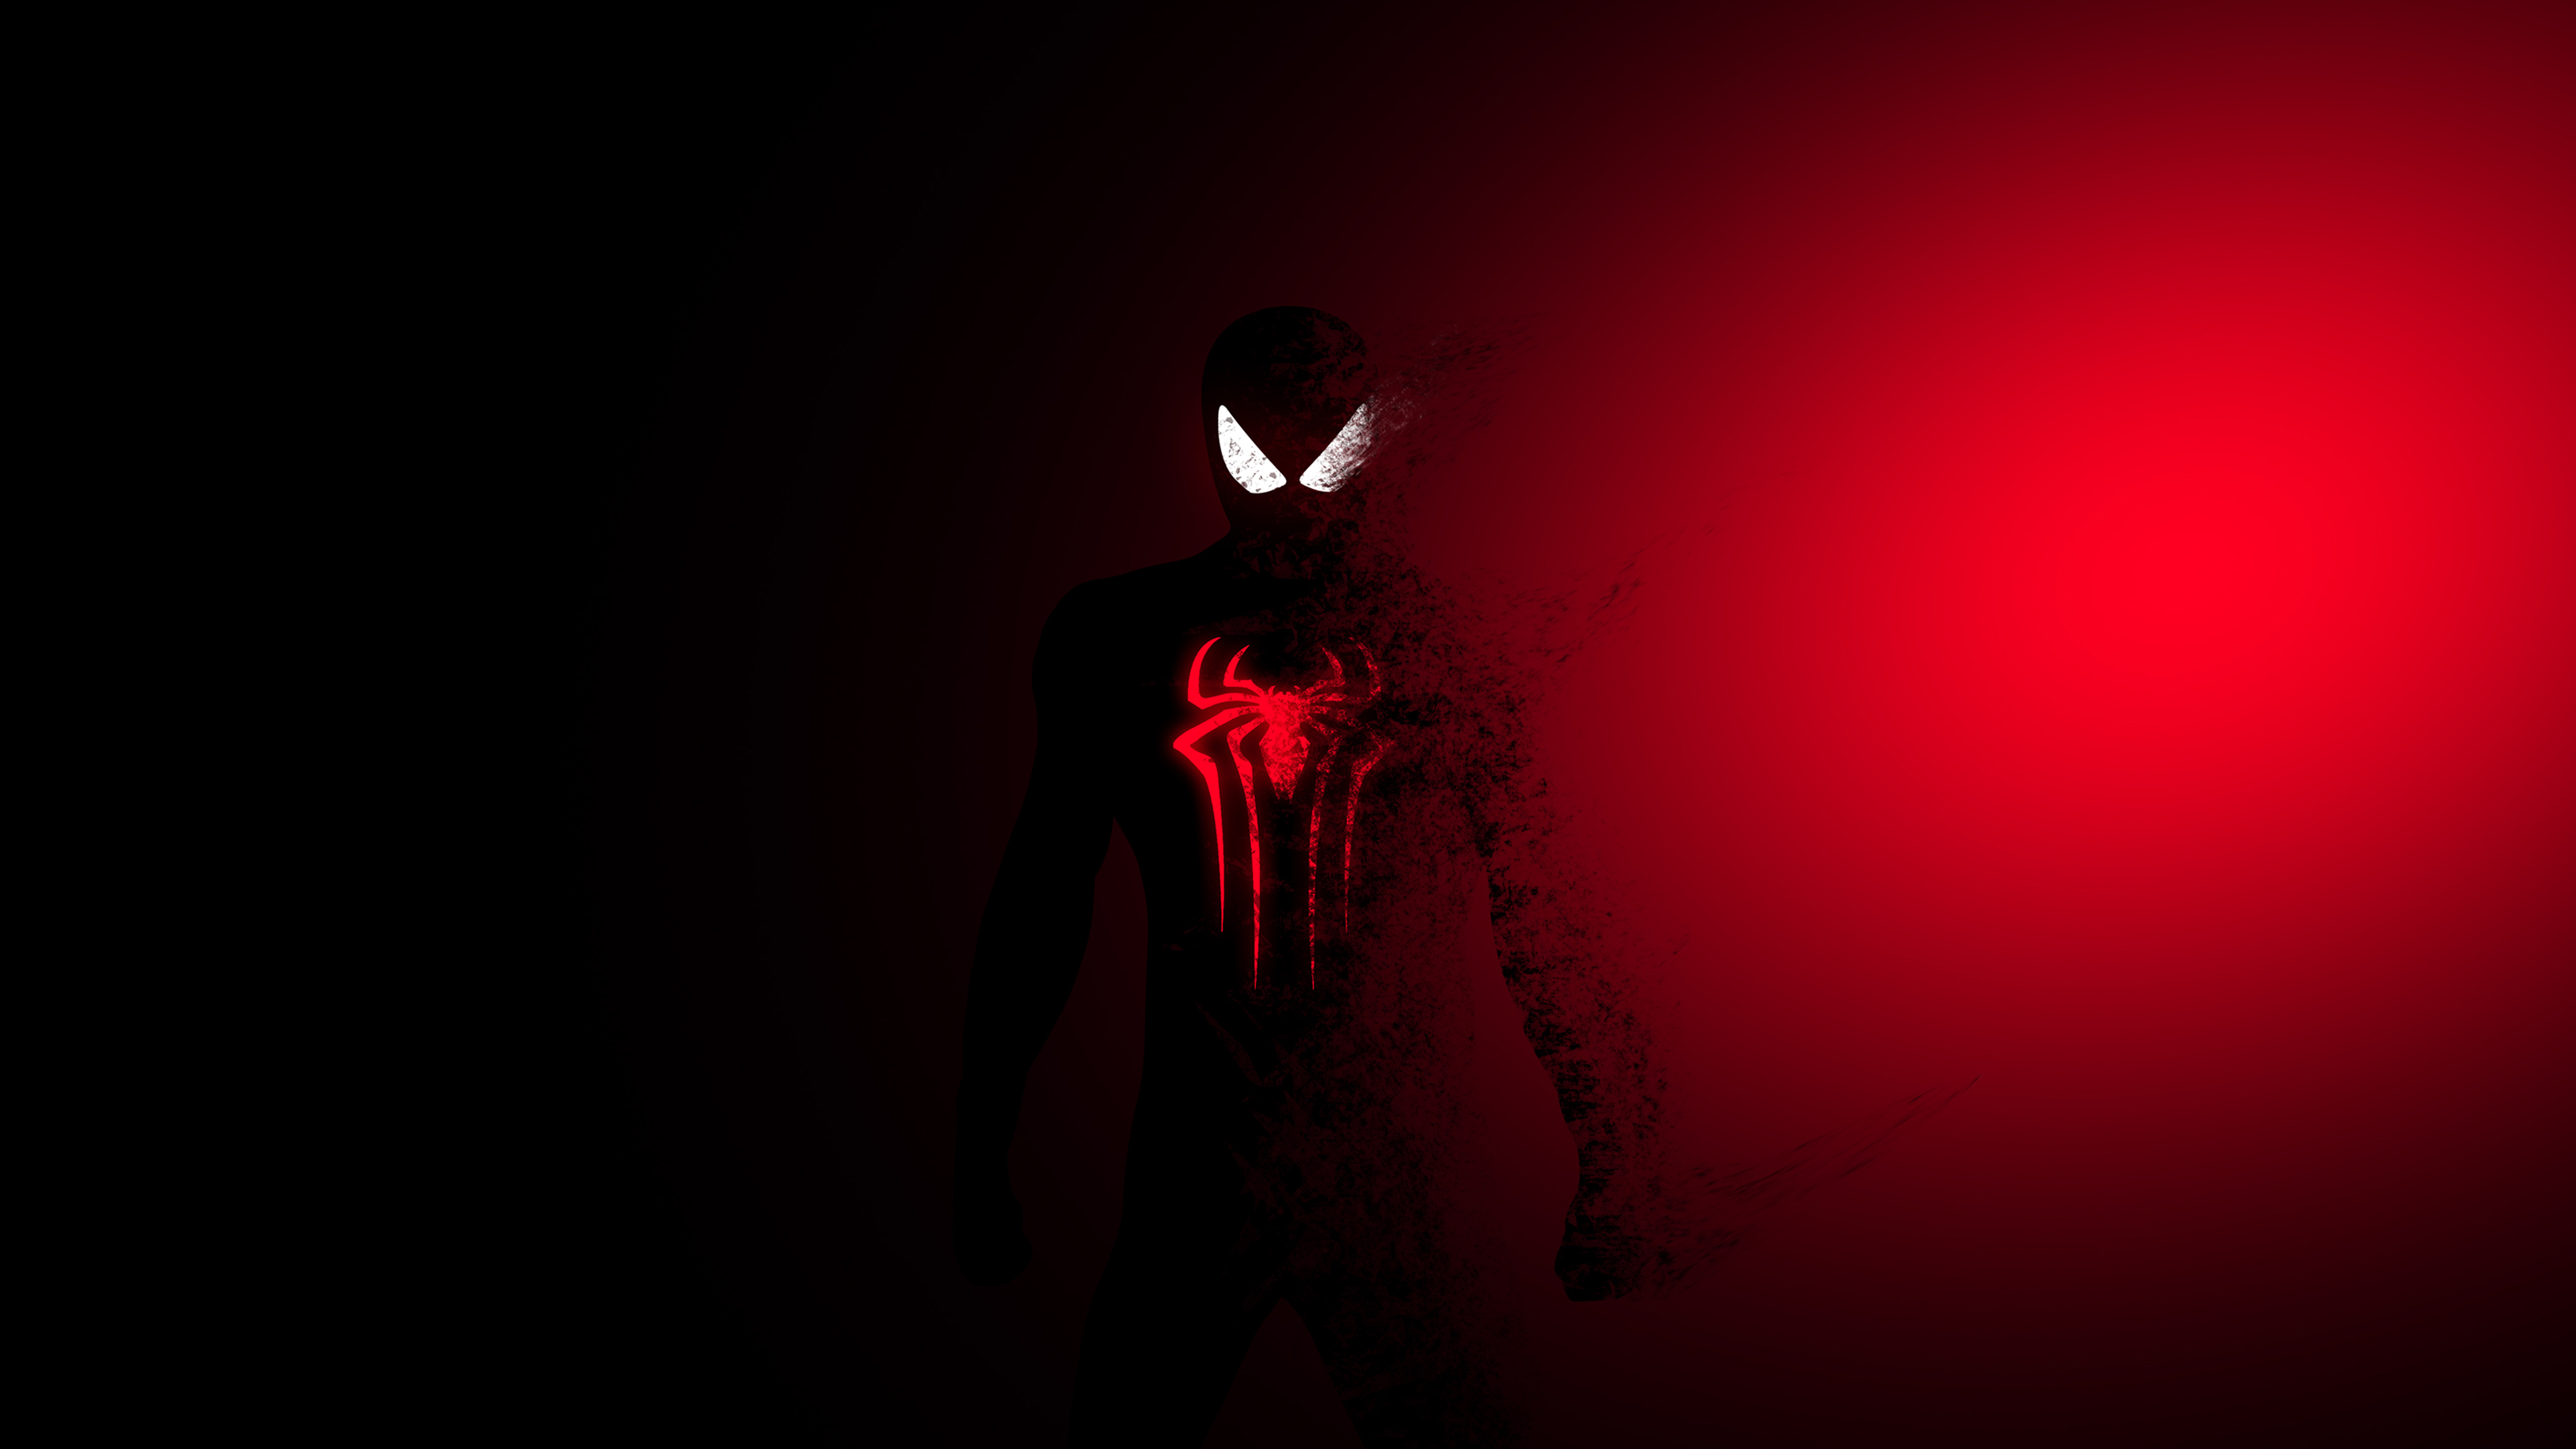 Những fan của nhân vật siêu anh hùng Spider-Man sẽ không thể bỏ qua hình nền này. Spider-Man Wallpaper 4K, Dark, Red, Minimal, Graphics CGI, #167 sẽ đưa bạn vào một thế giới hư cấu với những đường nét tối giản và kiểu dáng độc đáo. Đừng bỏ lỡ cơ hội chiêm ngưỡng tác phẩm nghệ thuật ấn tượng này.